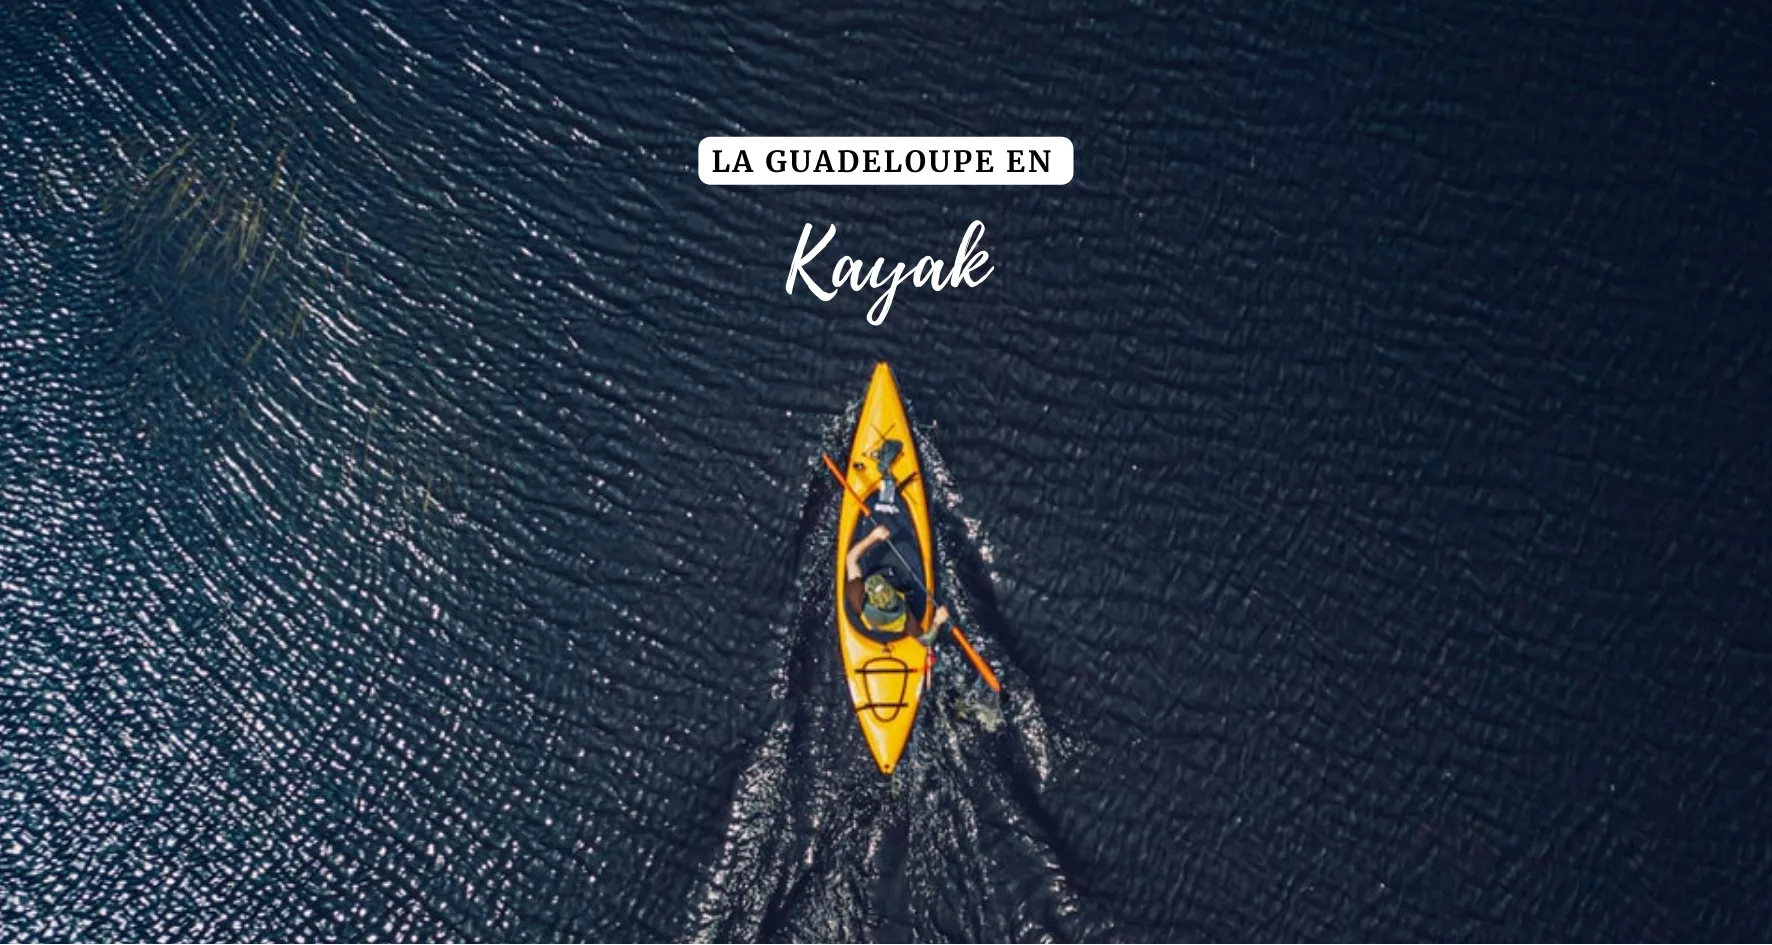 Main image of article: Découverte de la Guadeloupe en kayak